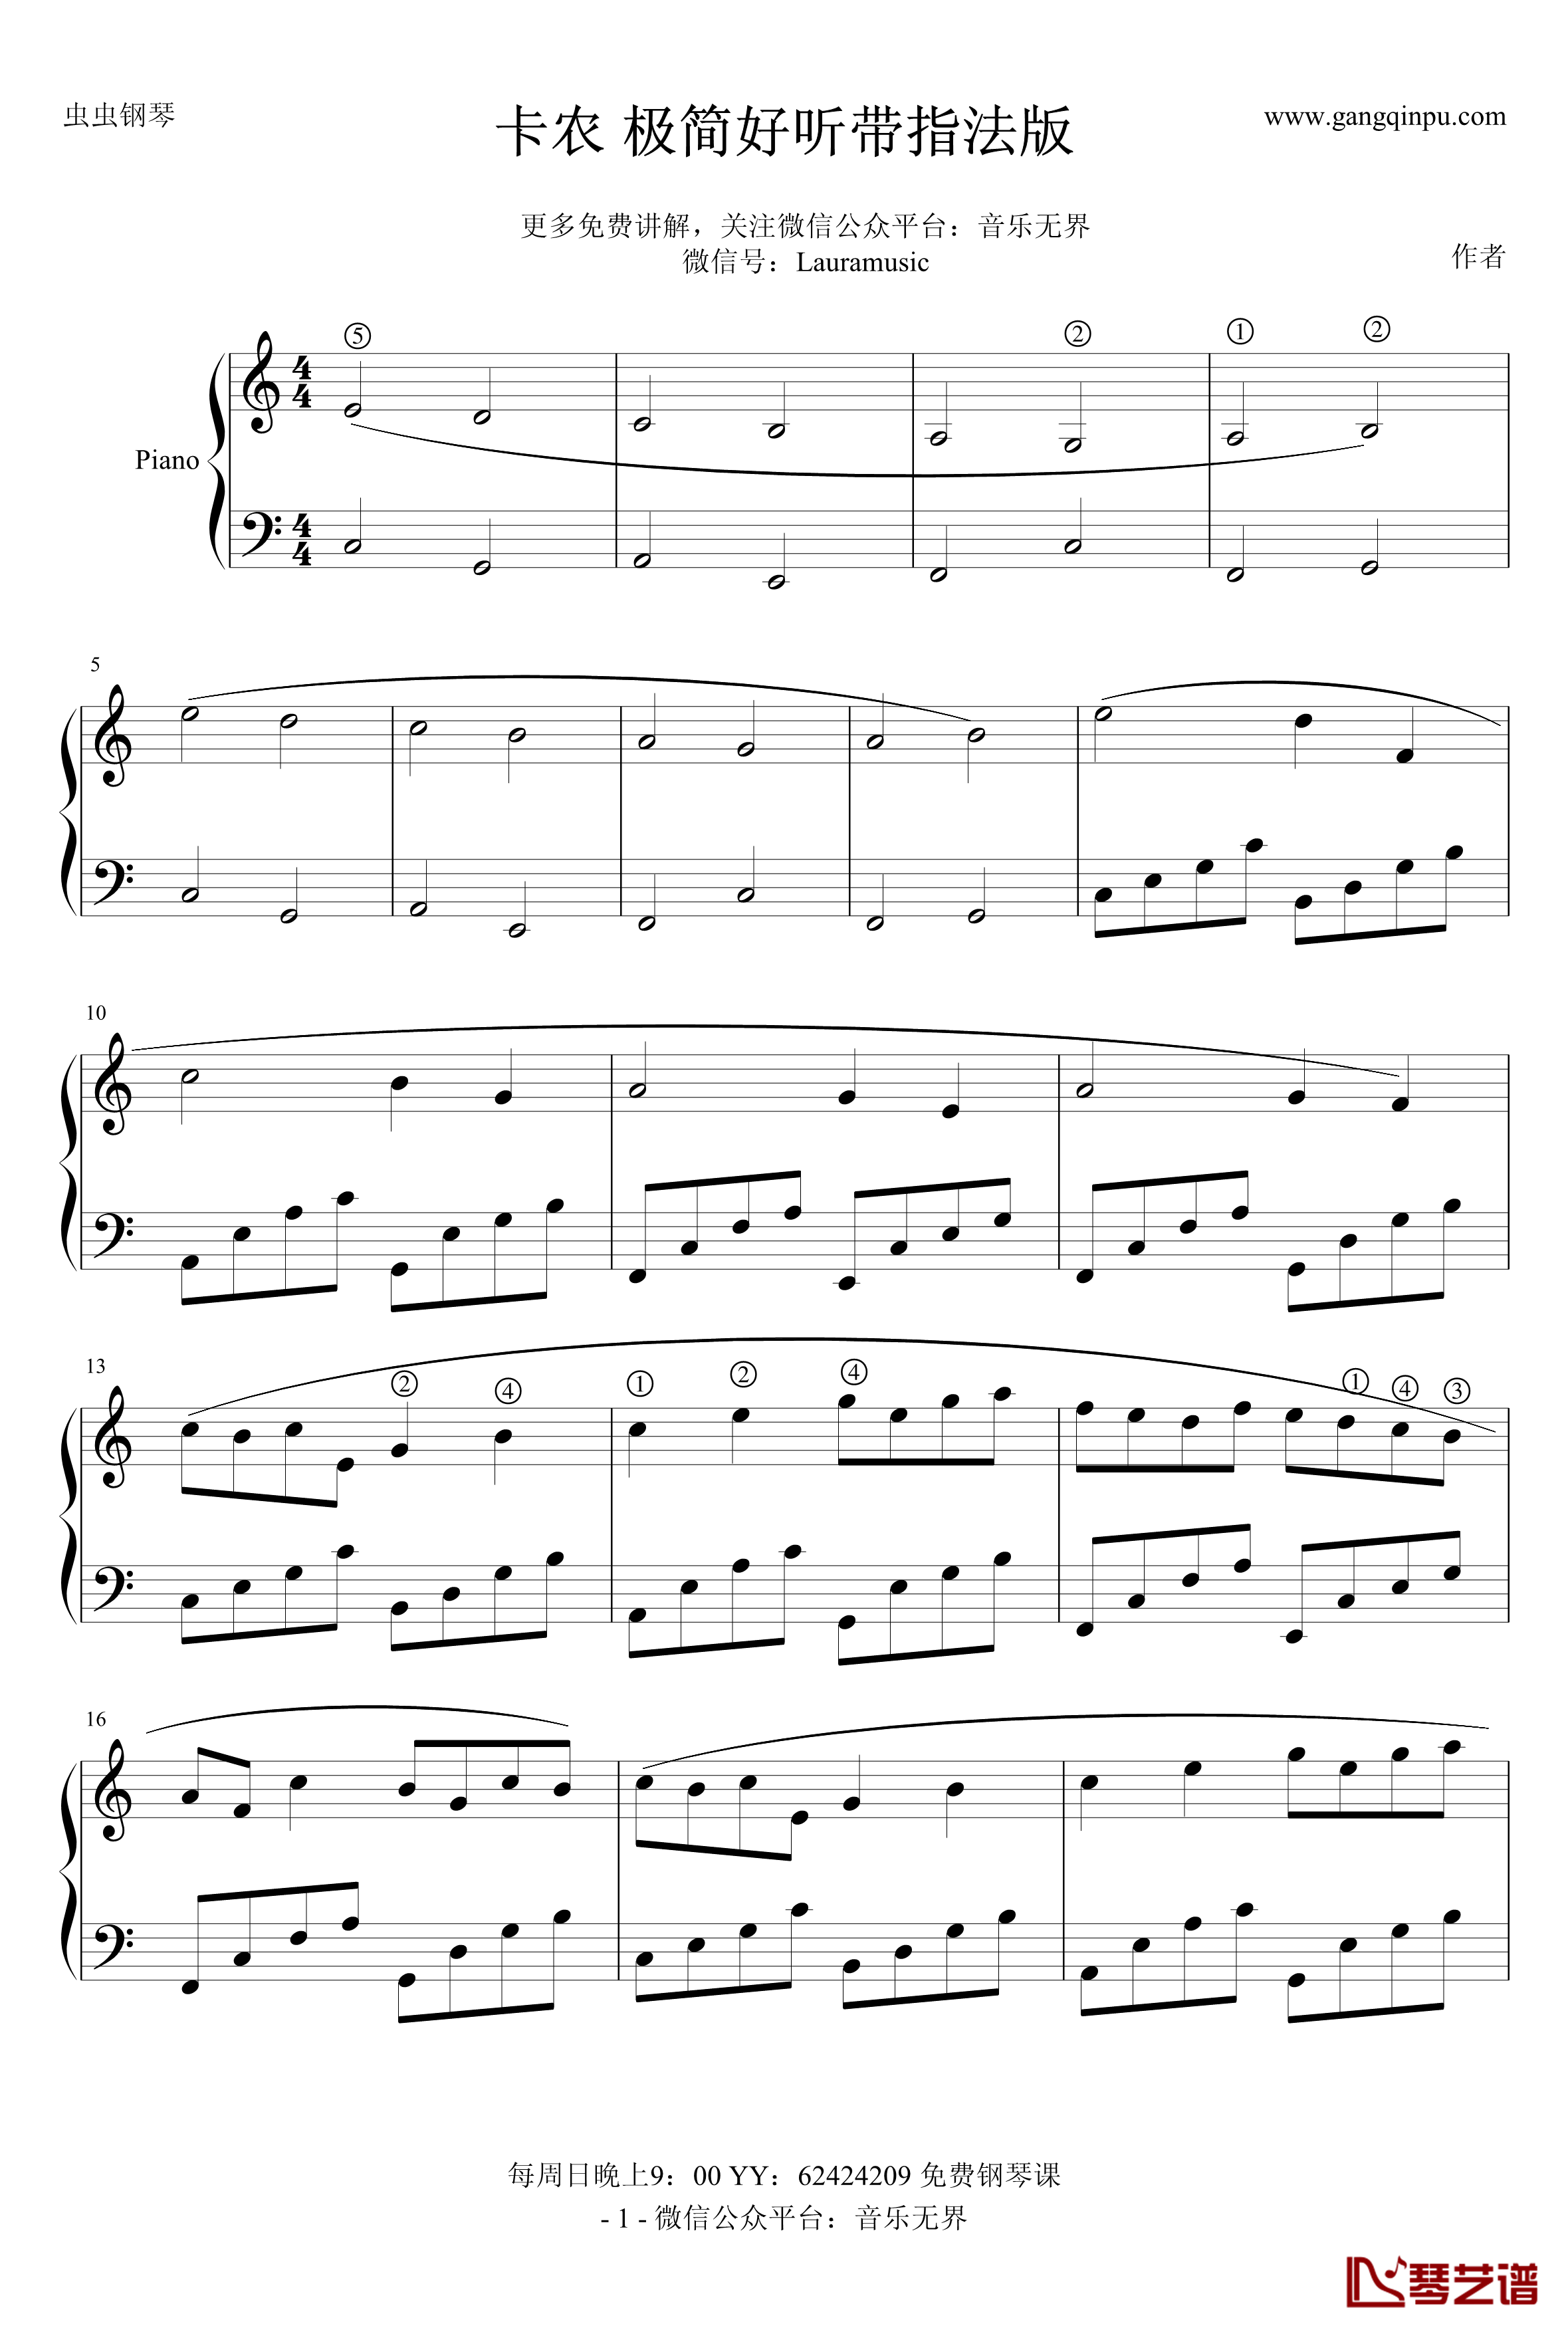 卡农钢琴谱-极简版带指法-帕赫贝尔-Pachelbel1